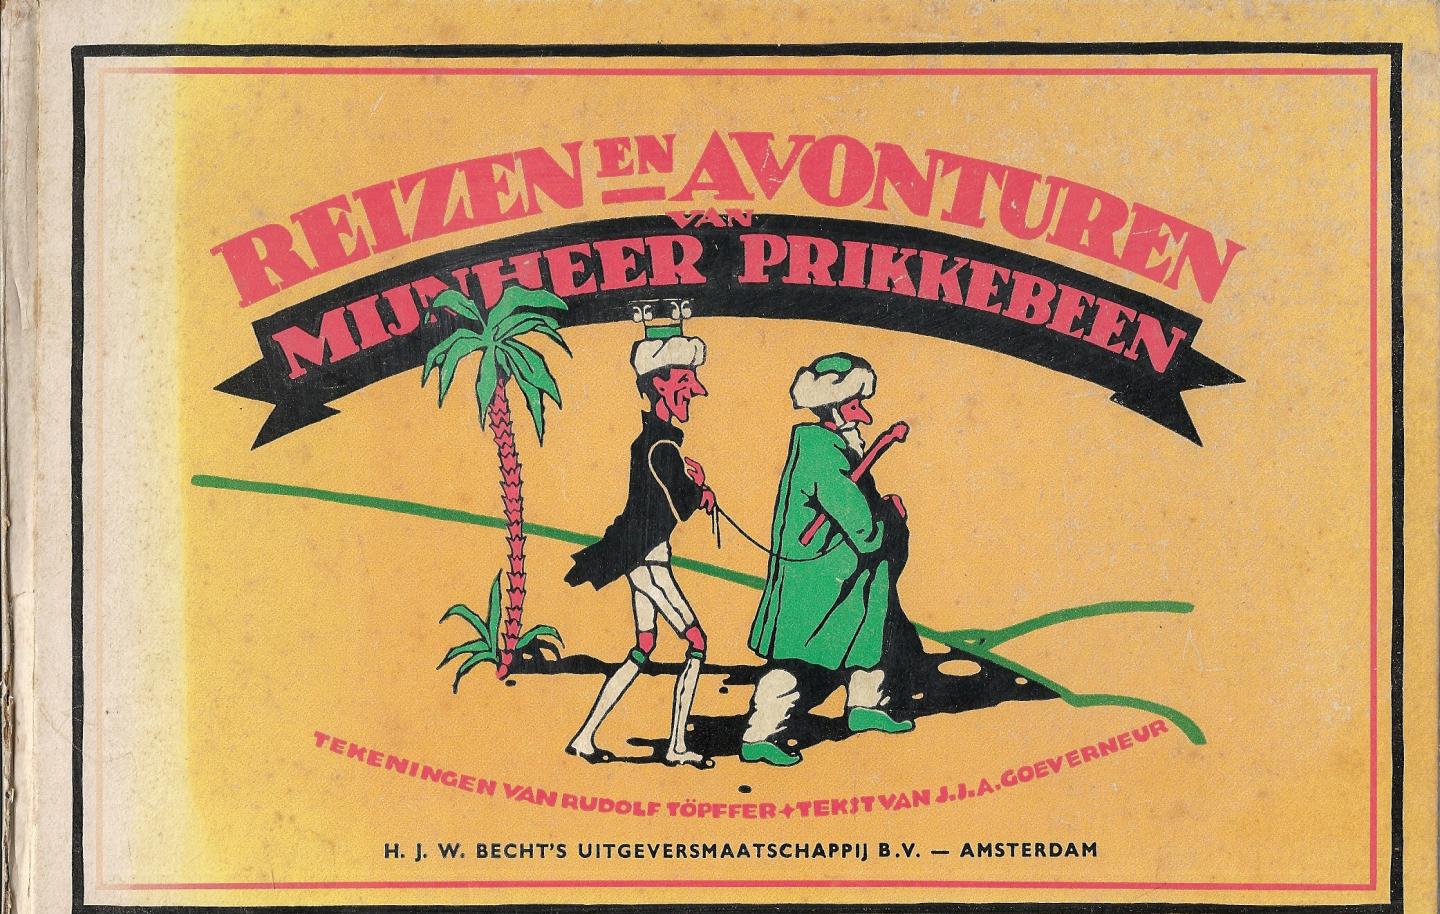 Goeverneur, J.J.A. (voor de Nederlandse jeugd berijmd door ...) & Rudolf Töpfer - tekeningen - Reizen en Avonturen van Mijnheer Prikkebeen  een wonderbaarlijke en kluchtige historie